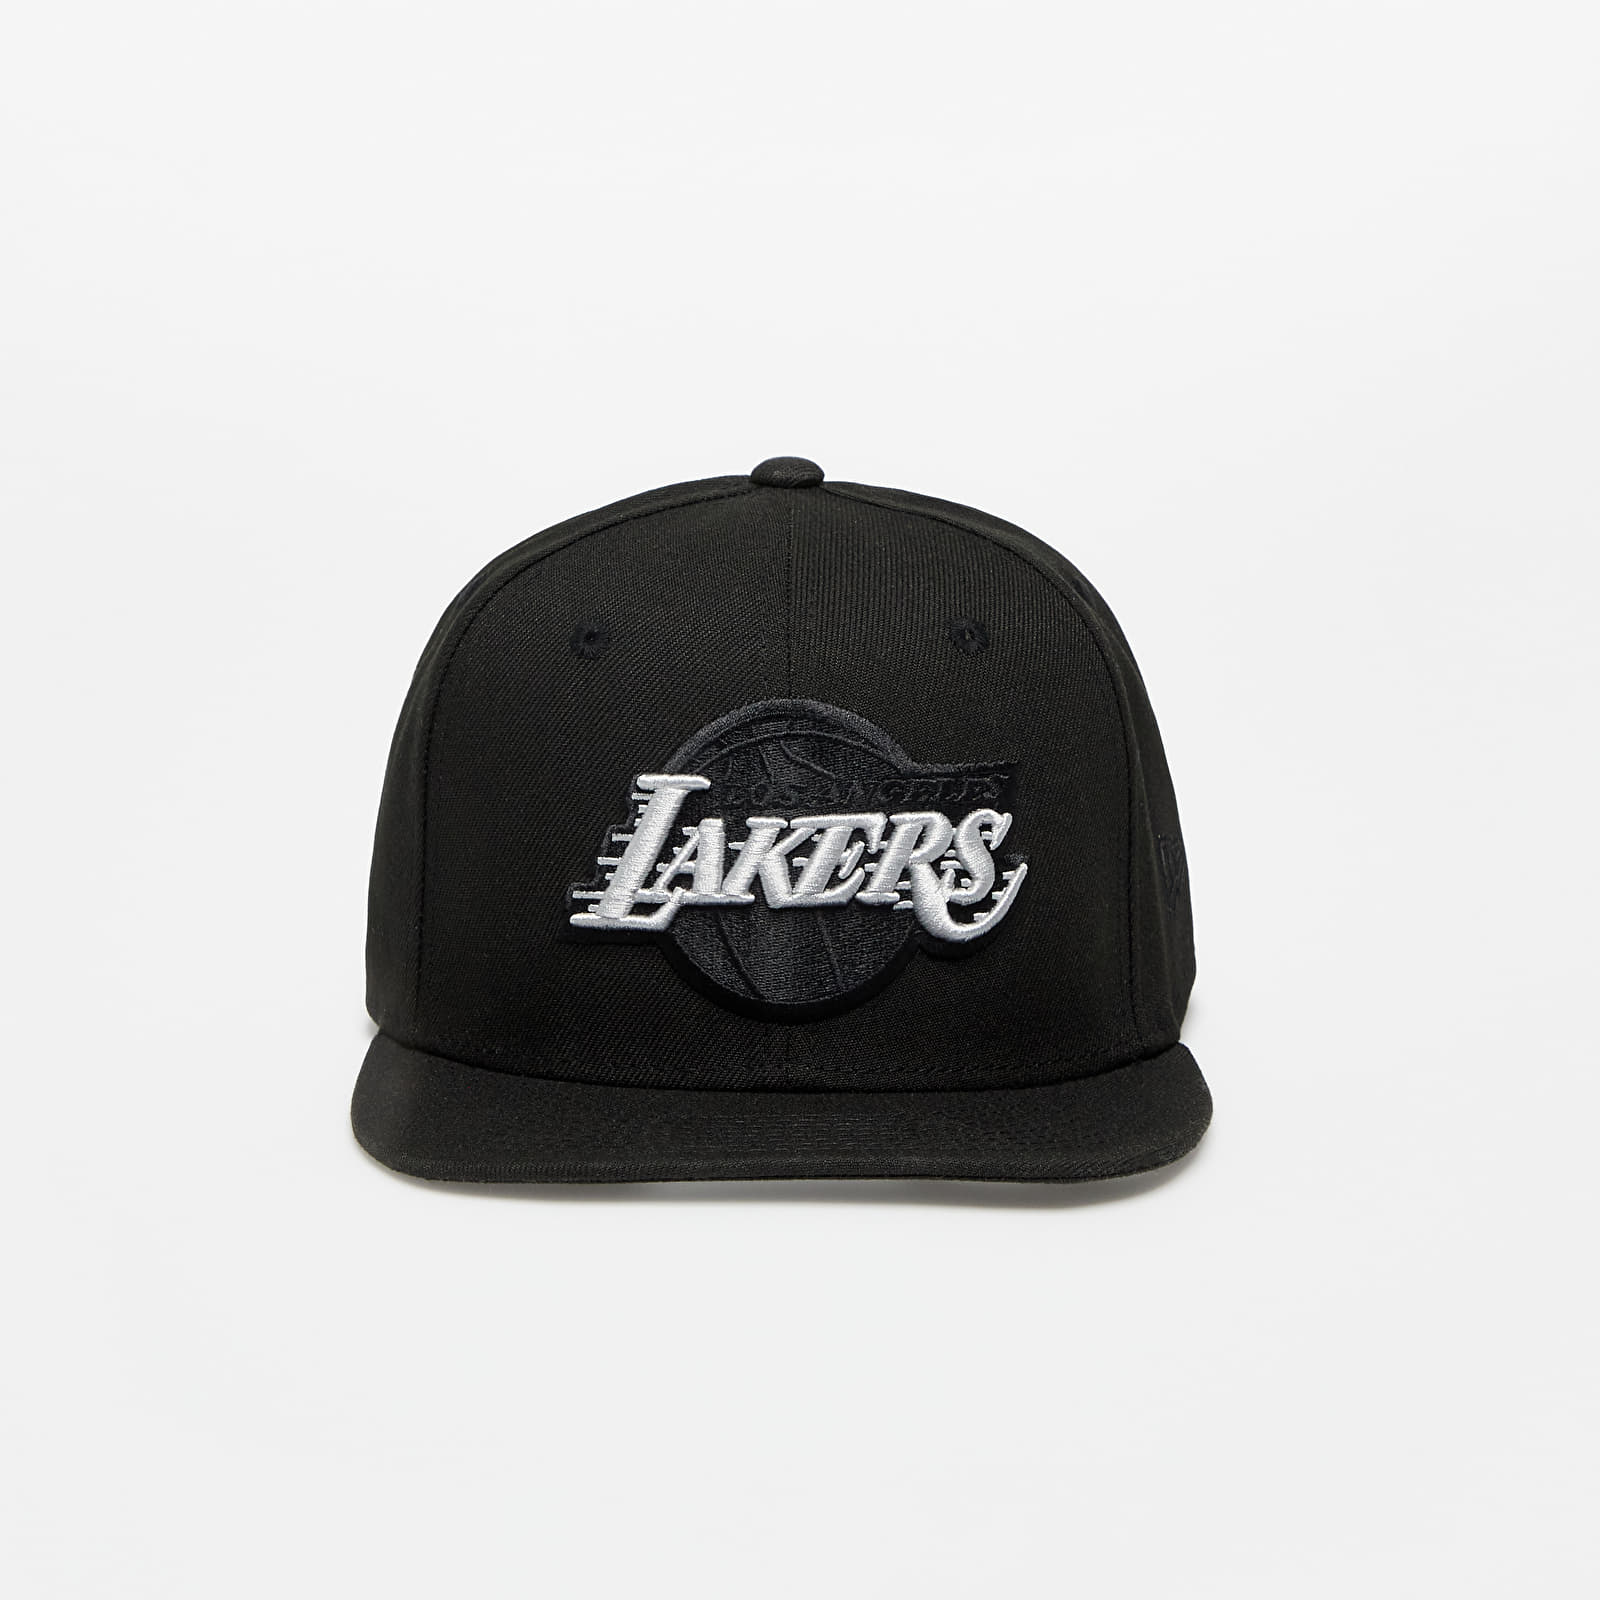 Caps New Era Los Angeles Lakers 9FIFTY Snapback Cap Black